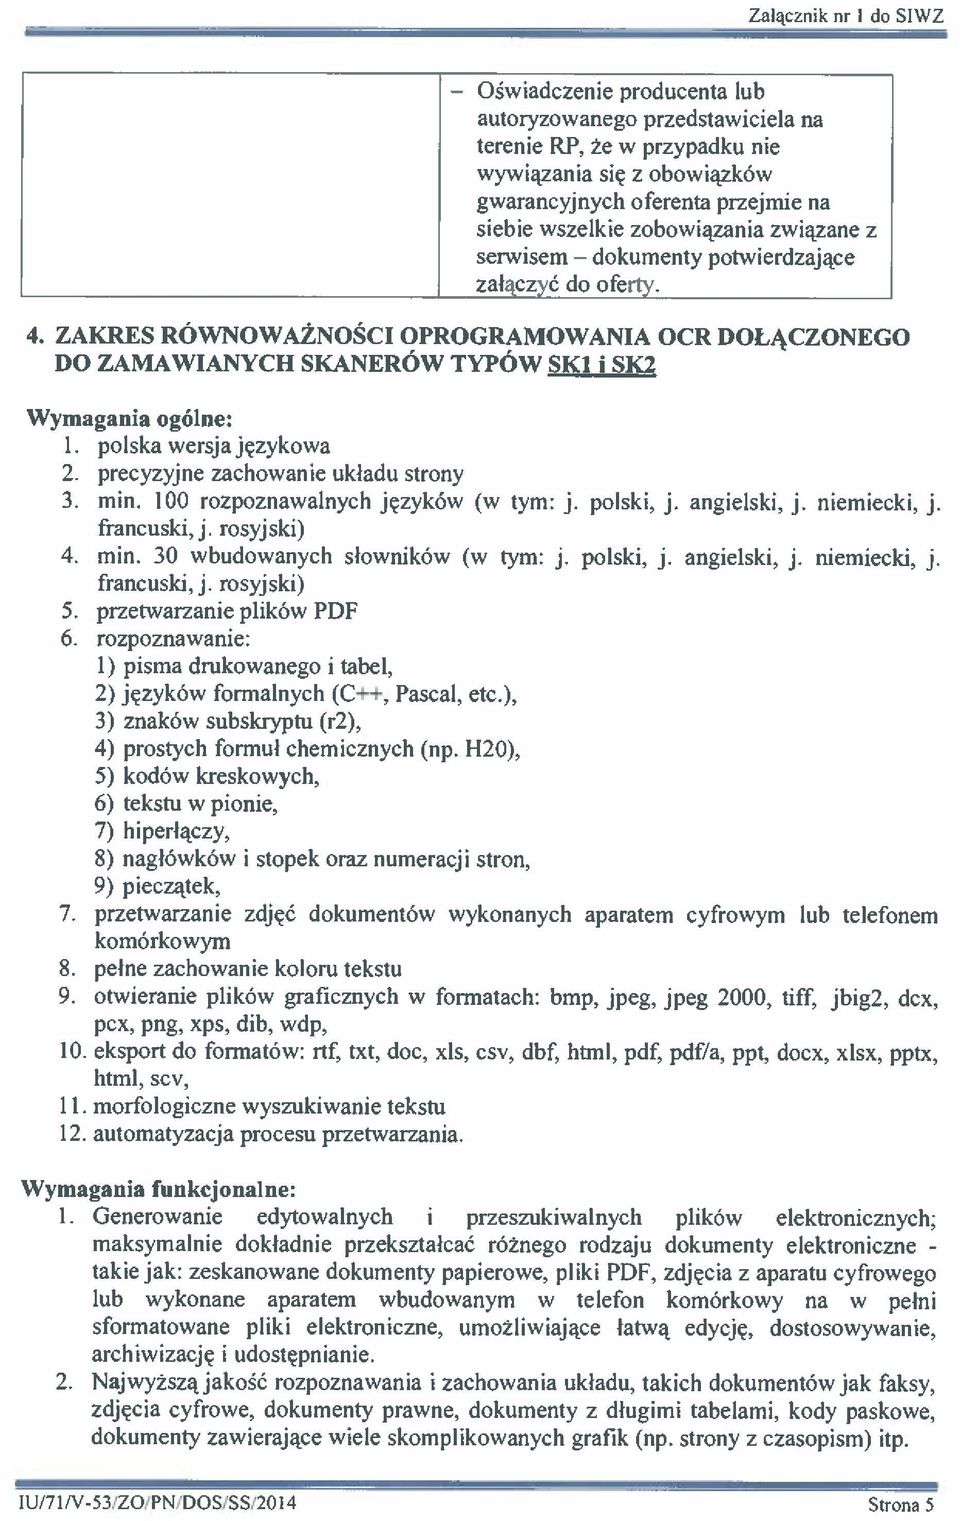 ZAKRES RÓWNOWAŻNOŚCI OPROGRAMOWANIA OCR DOŁĄCZONEGO DO ZAMAWIANYCH SKANERÓW TYPÓW SK1 i SK2 Wymagania ogólne: polska wersja językowa 2. precyzyjne zachowanie układu strony 3. min.